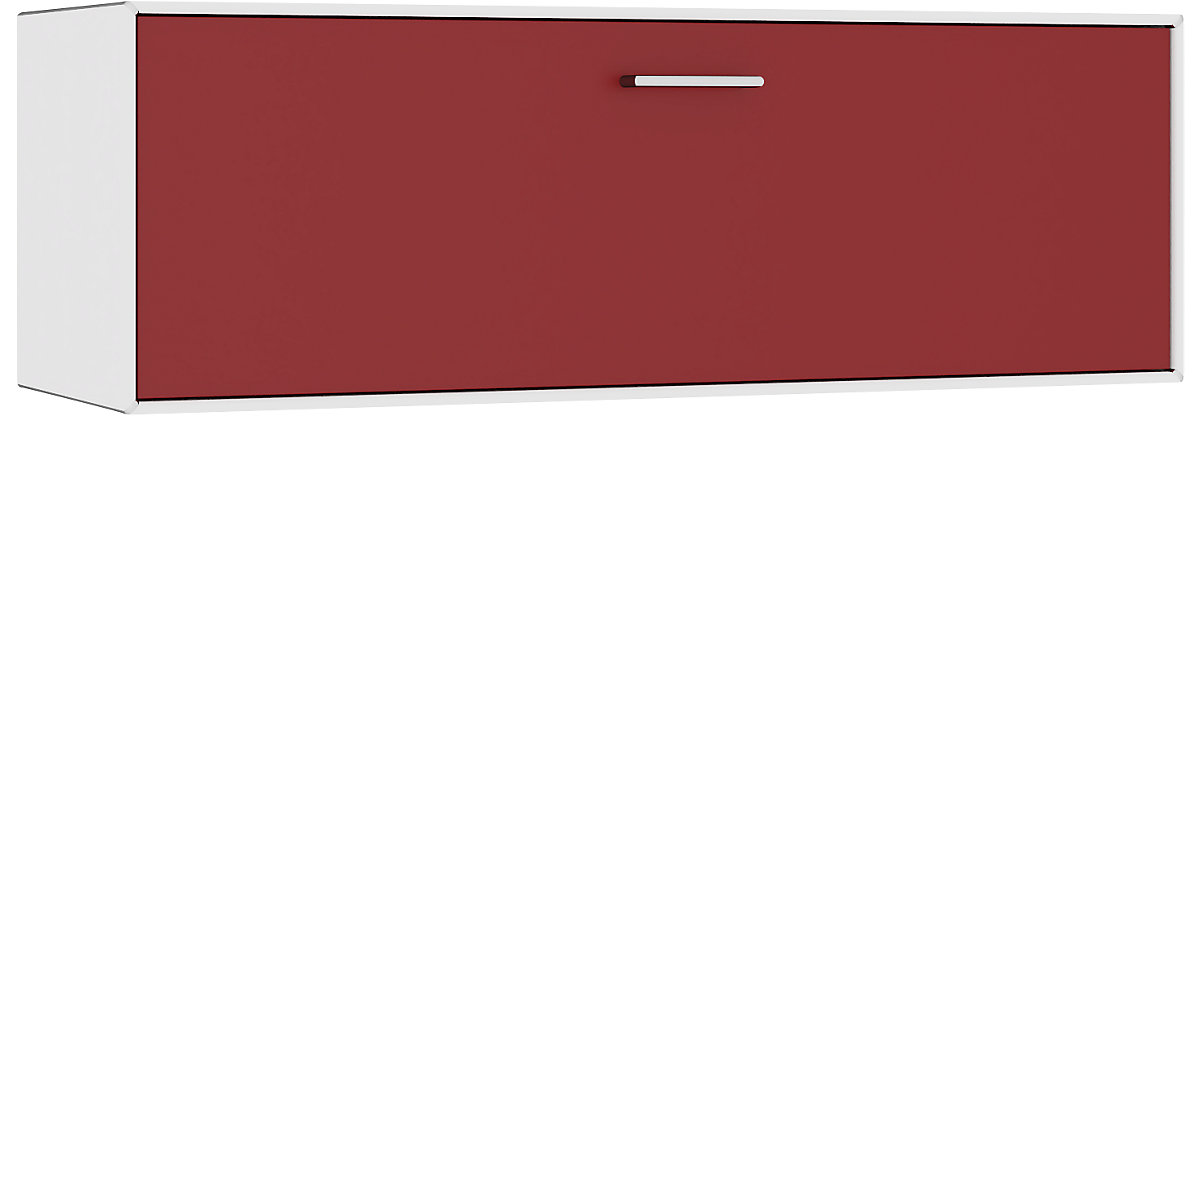 Einzelbox, hängend mauser, 1 Barfachklappe, Breite 1155 mm, reinweiß / rubinrot-4